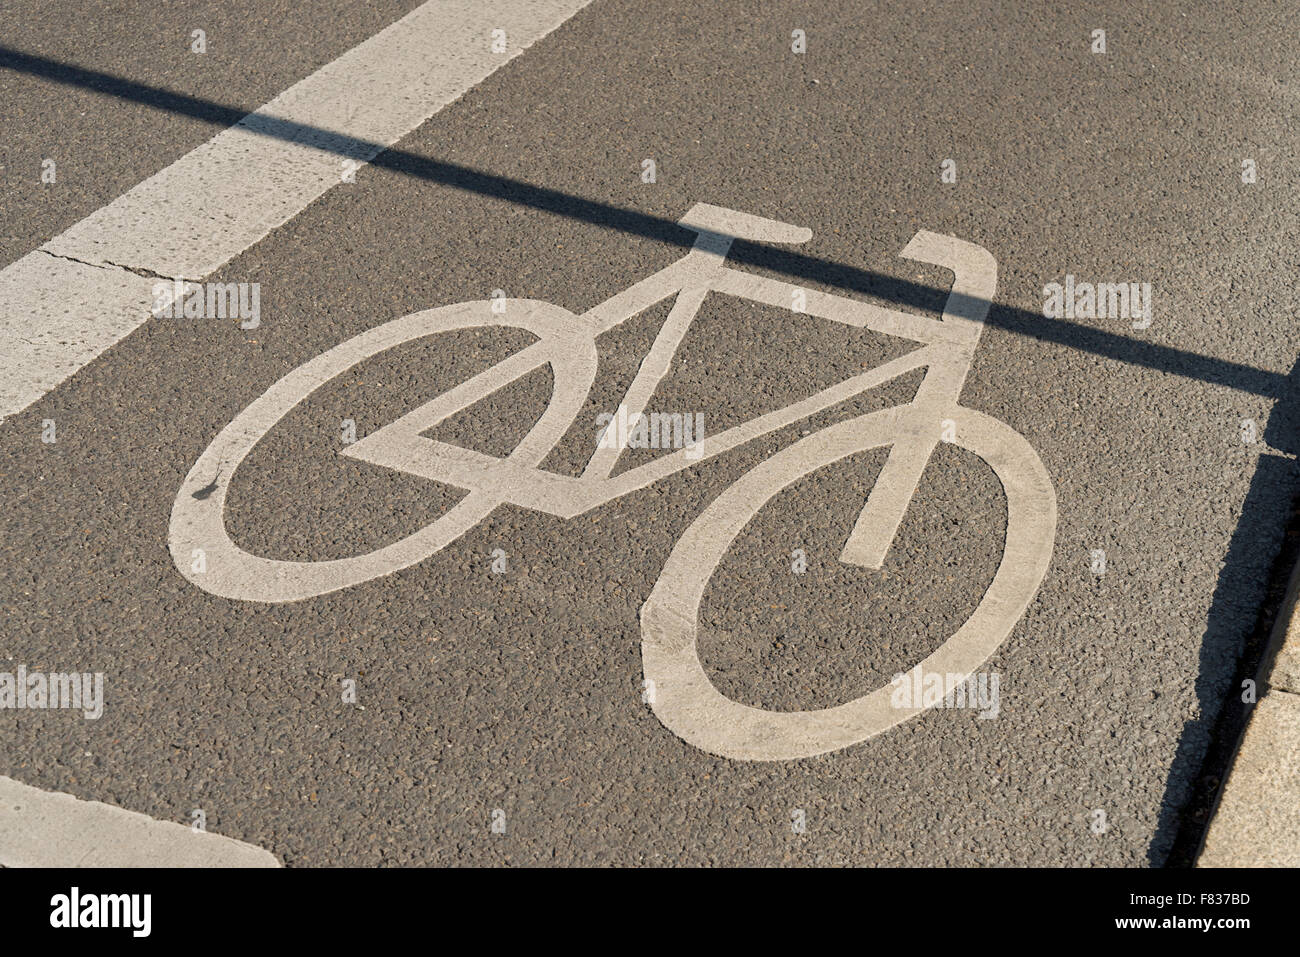 Fahrräder in einem markierten Radweg in Berlin, Deutschland. Trennung des Straßenverkehrs für die Sicherheit der Radfahrer. Stockfoto